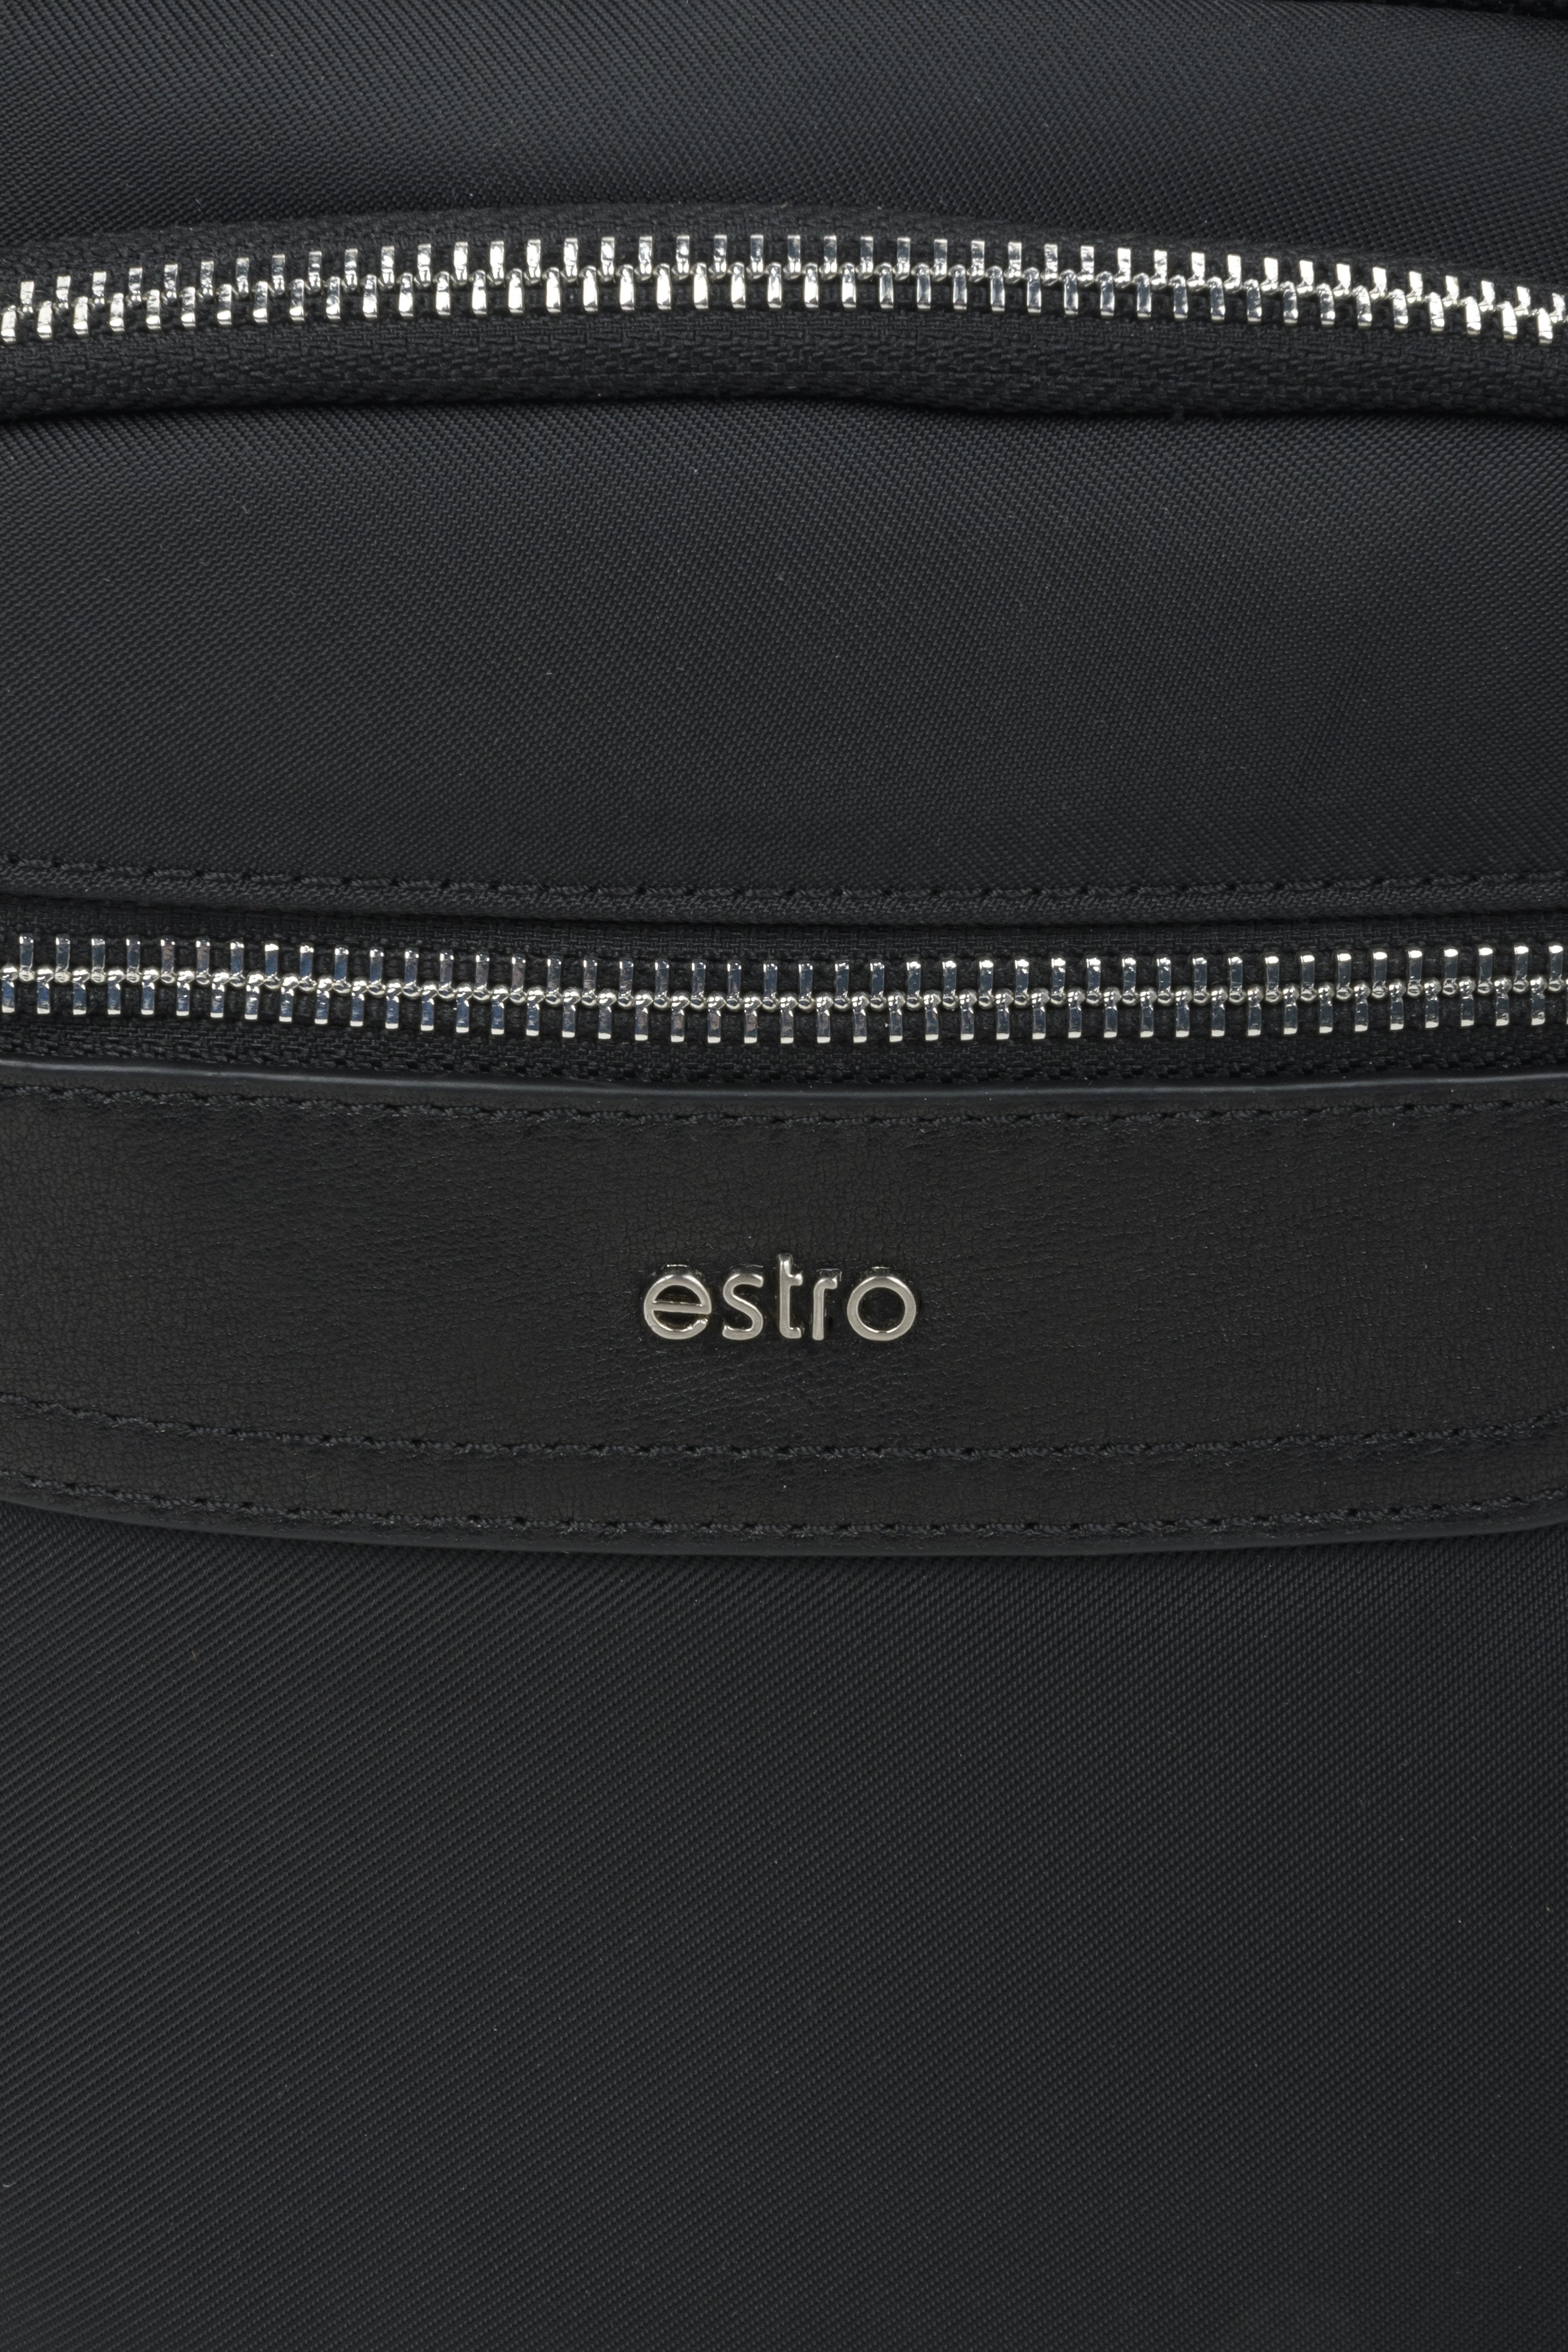 Men's black Estro pouch - close-up on the details.